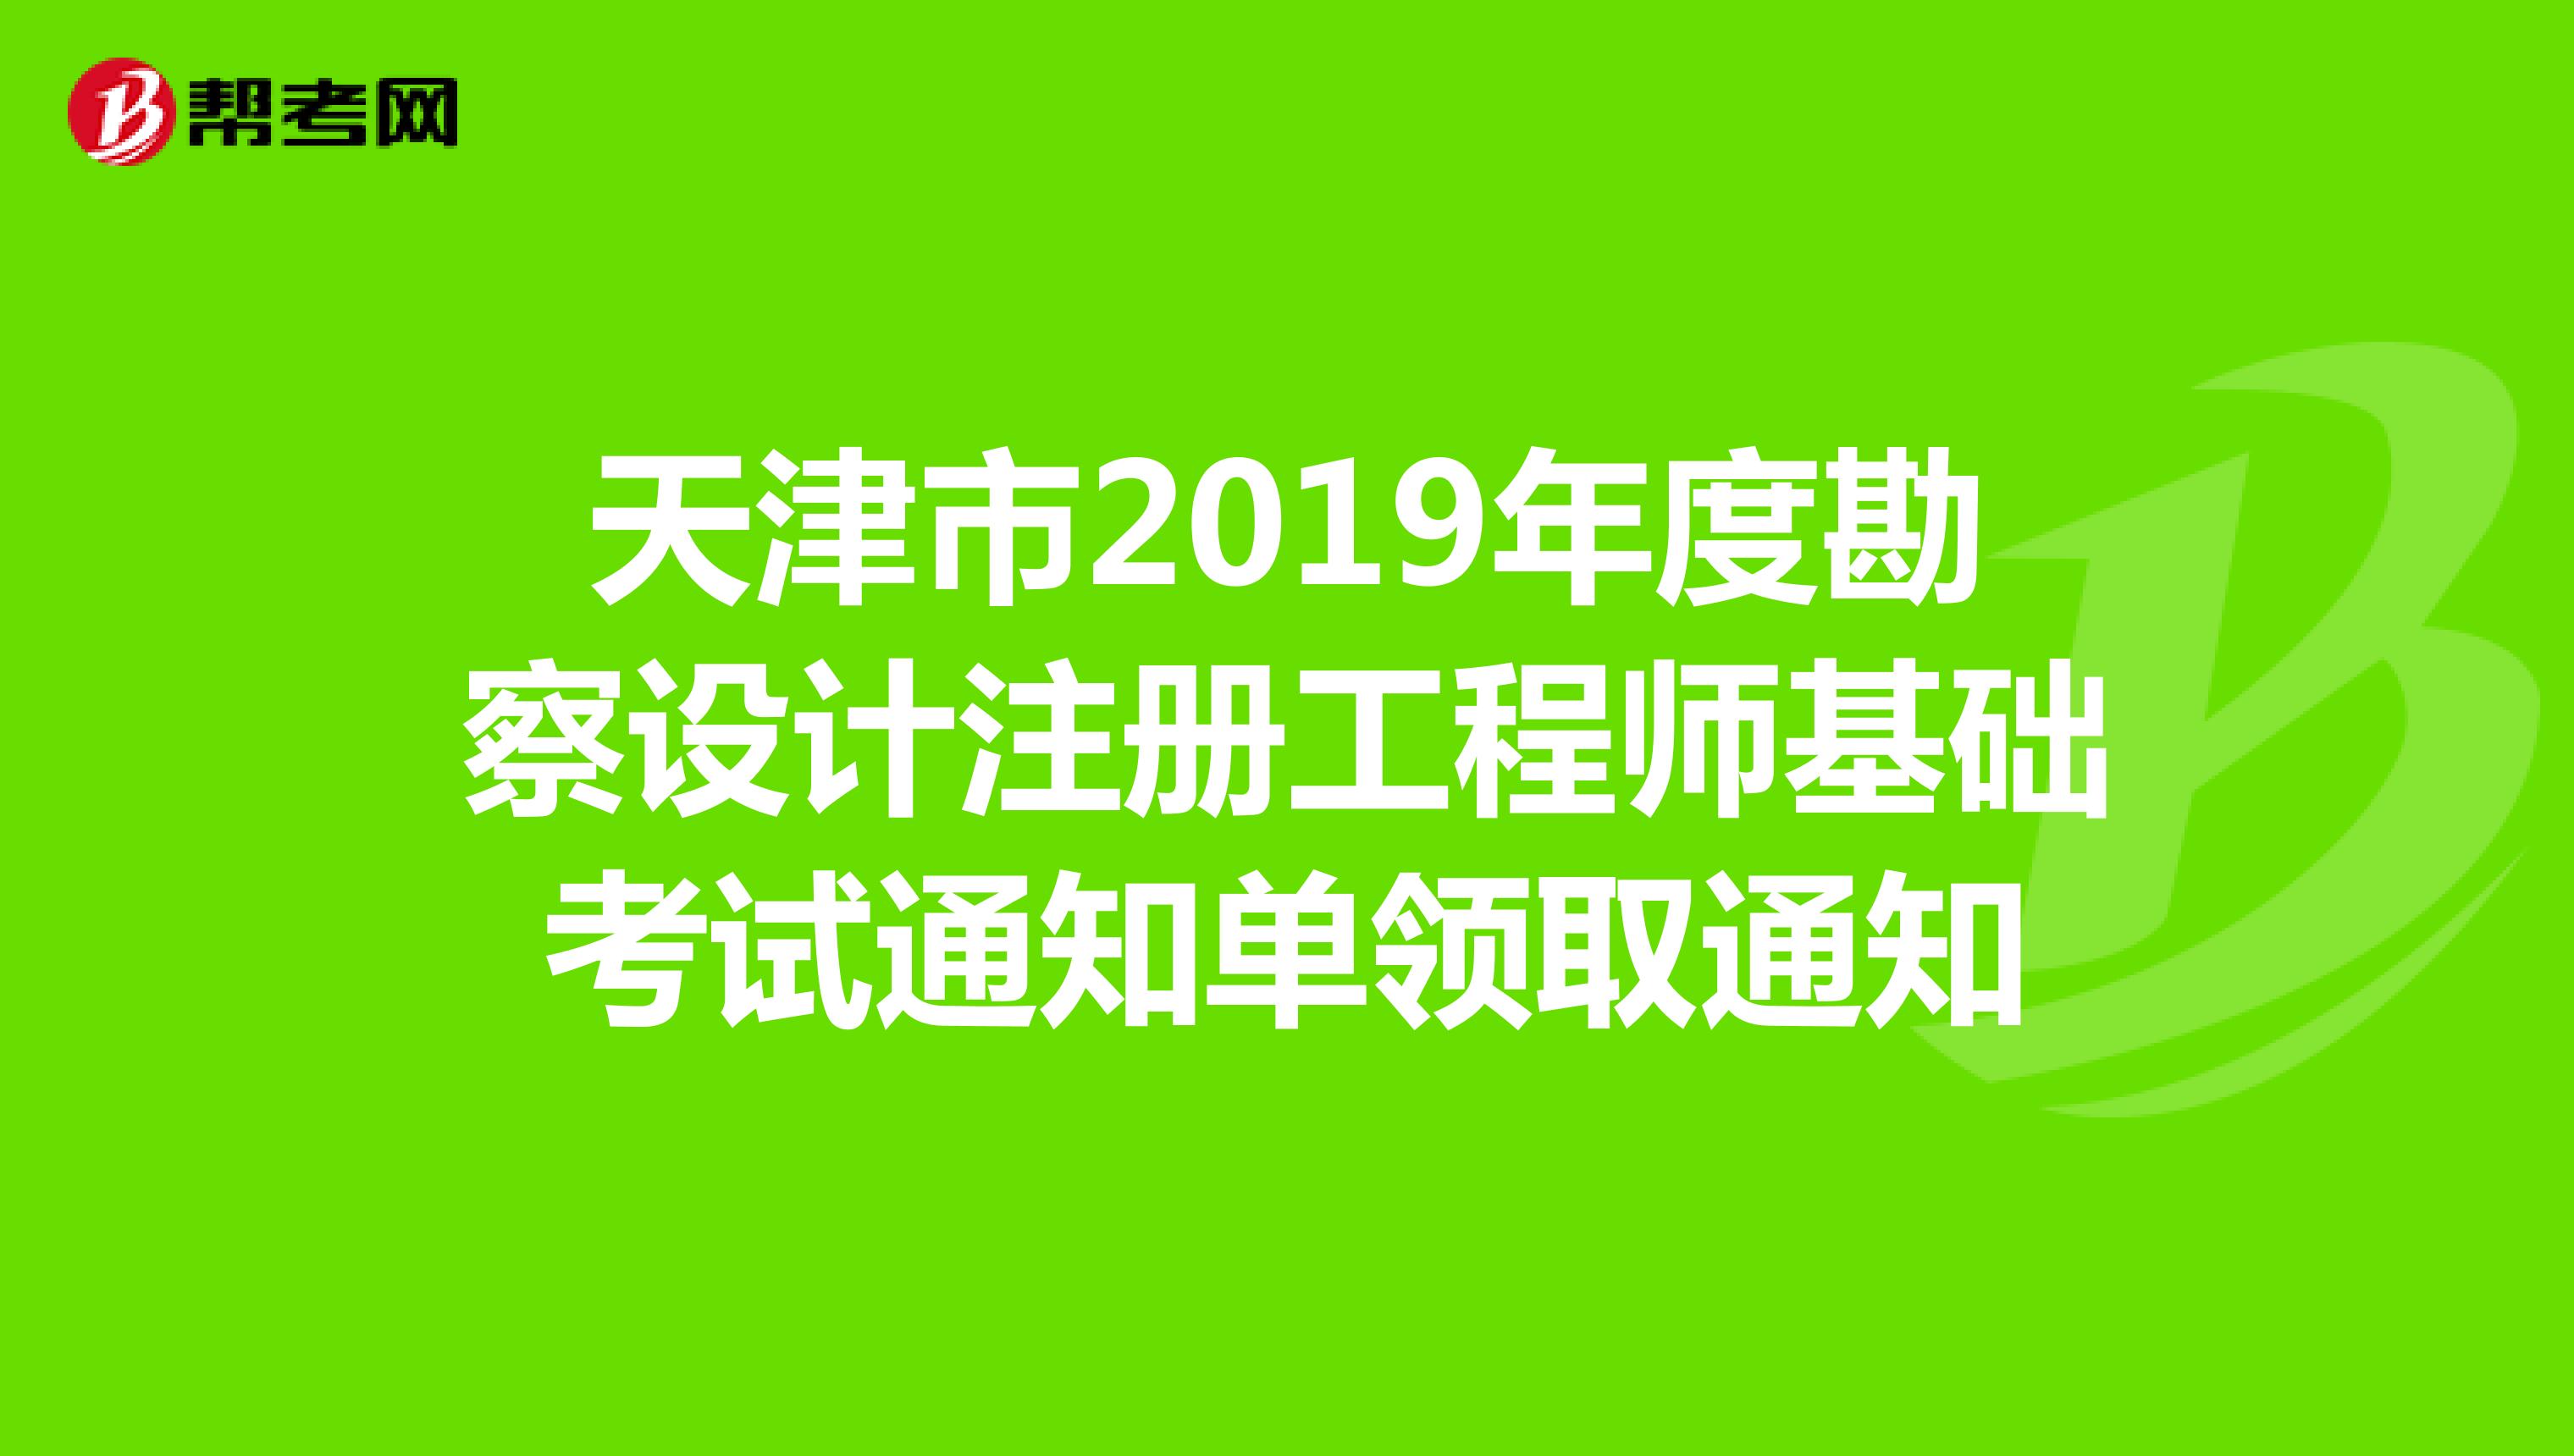 天津市2019年度勘察设计注册工程师基础考试通知单领取通知